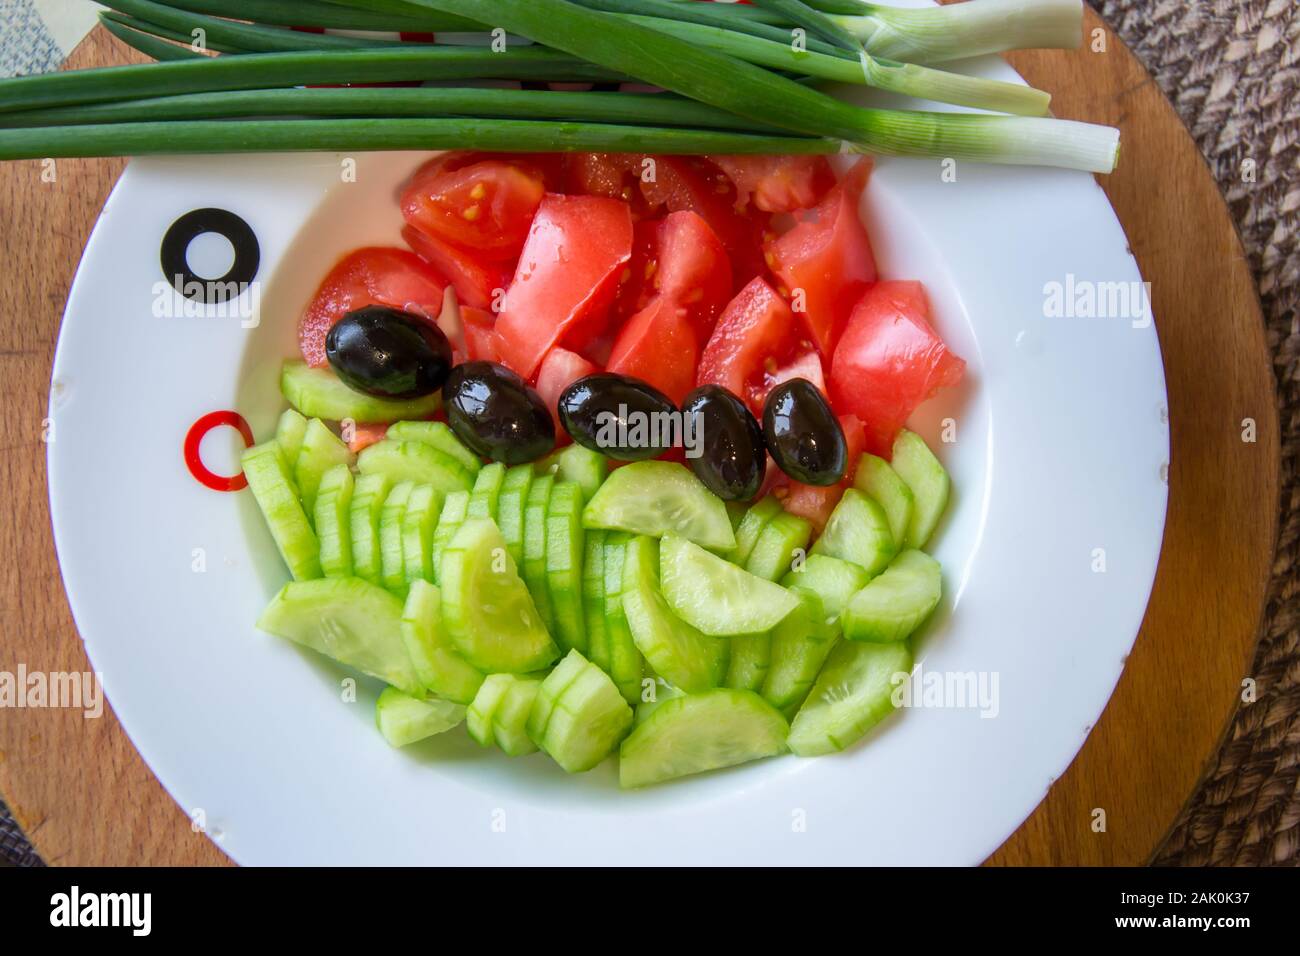 Salat mit frischem Gemüse, Gurken, Tomaten und schwarzen Oliven in einer Platte zum Würzen bereit, Zutaten für eine gesunde Ernährung Stockfoto